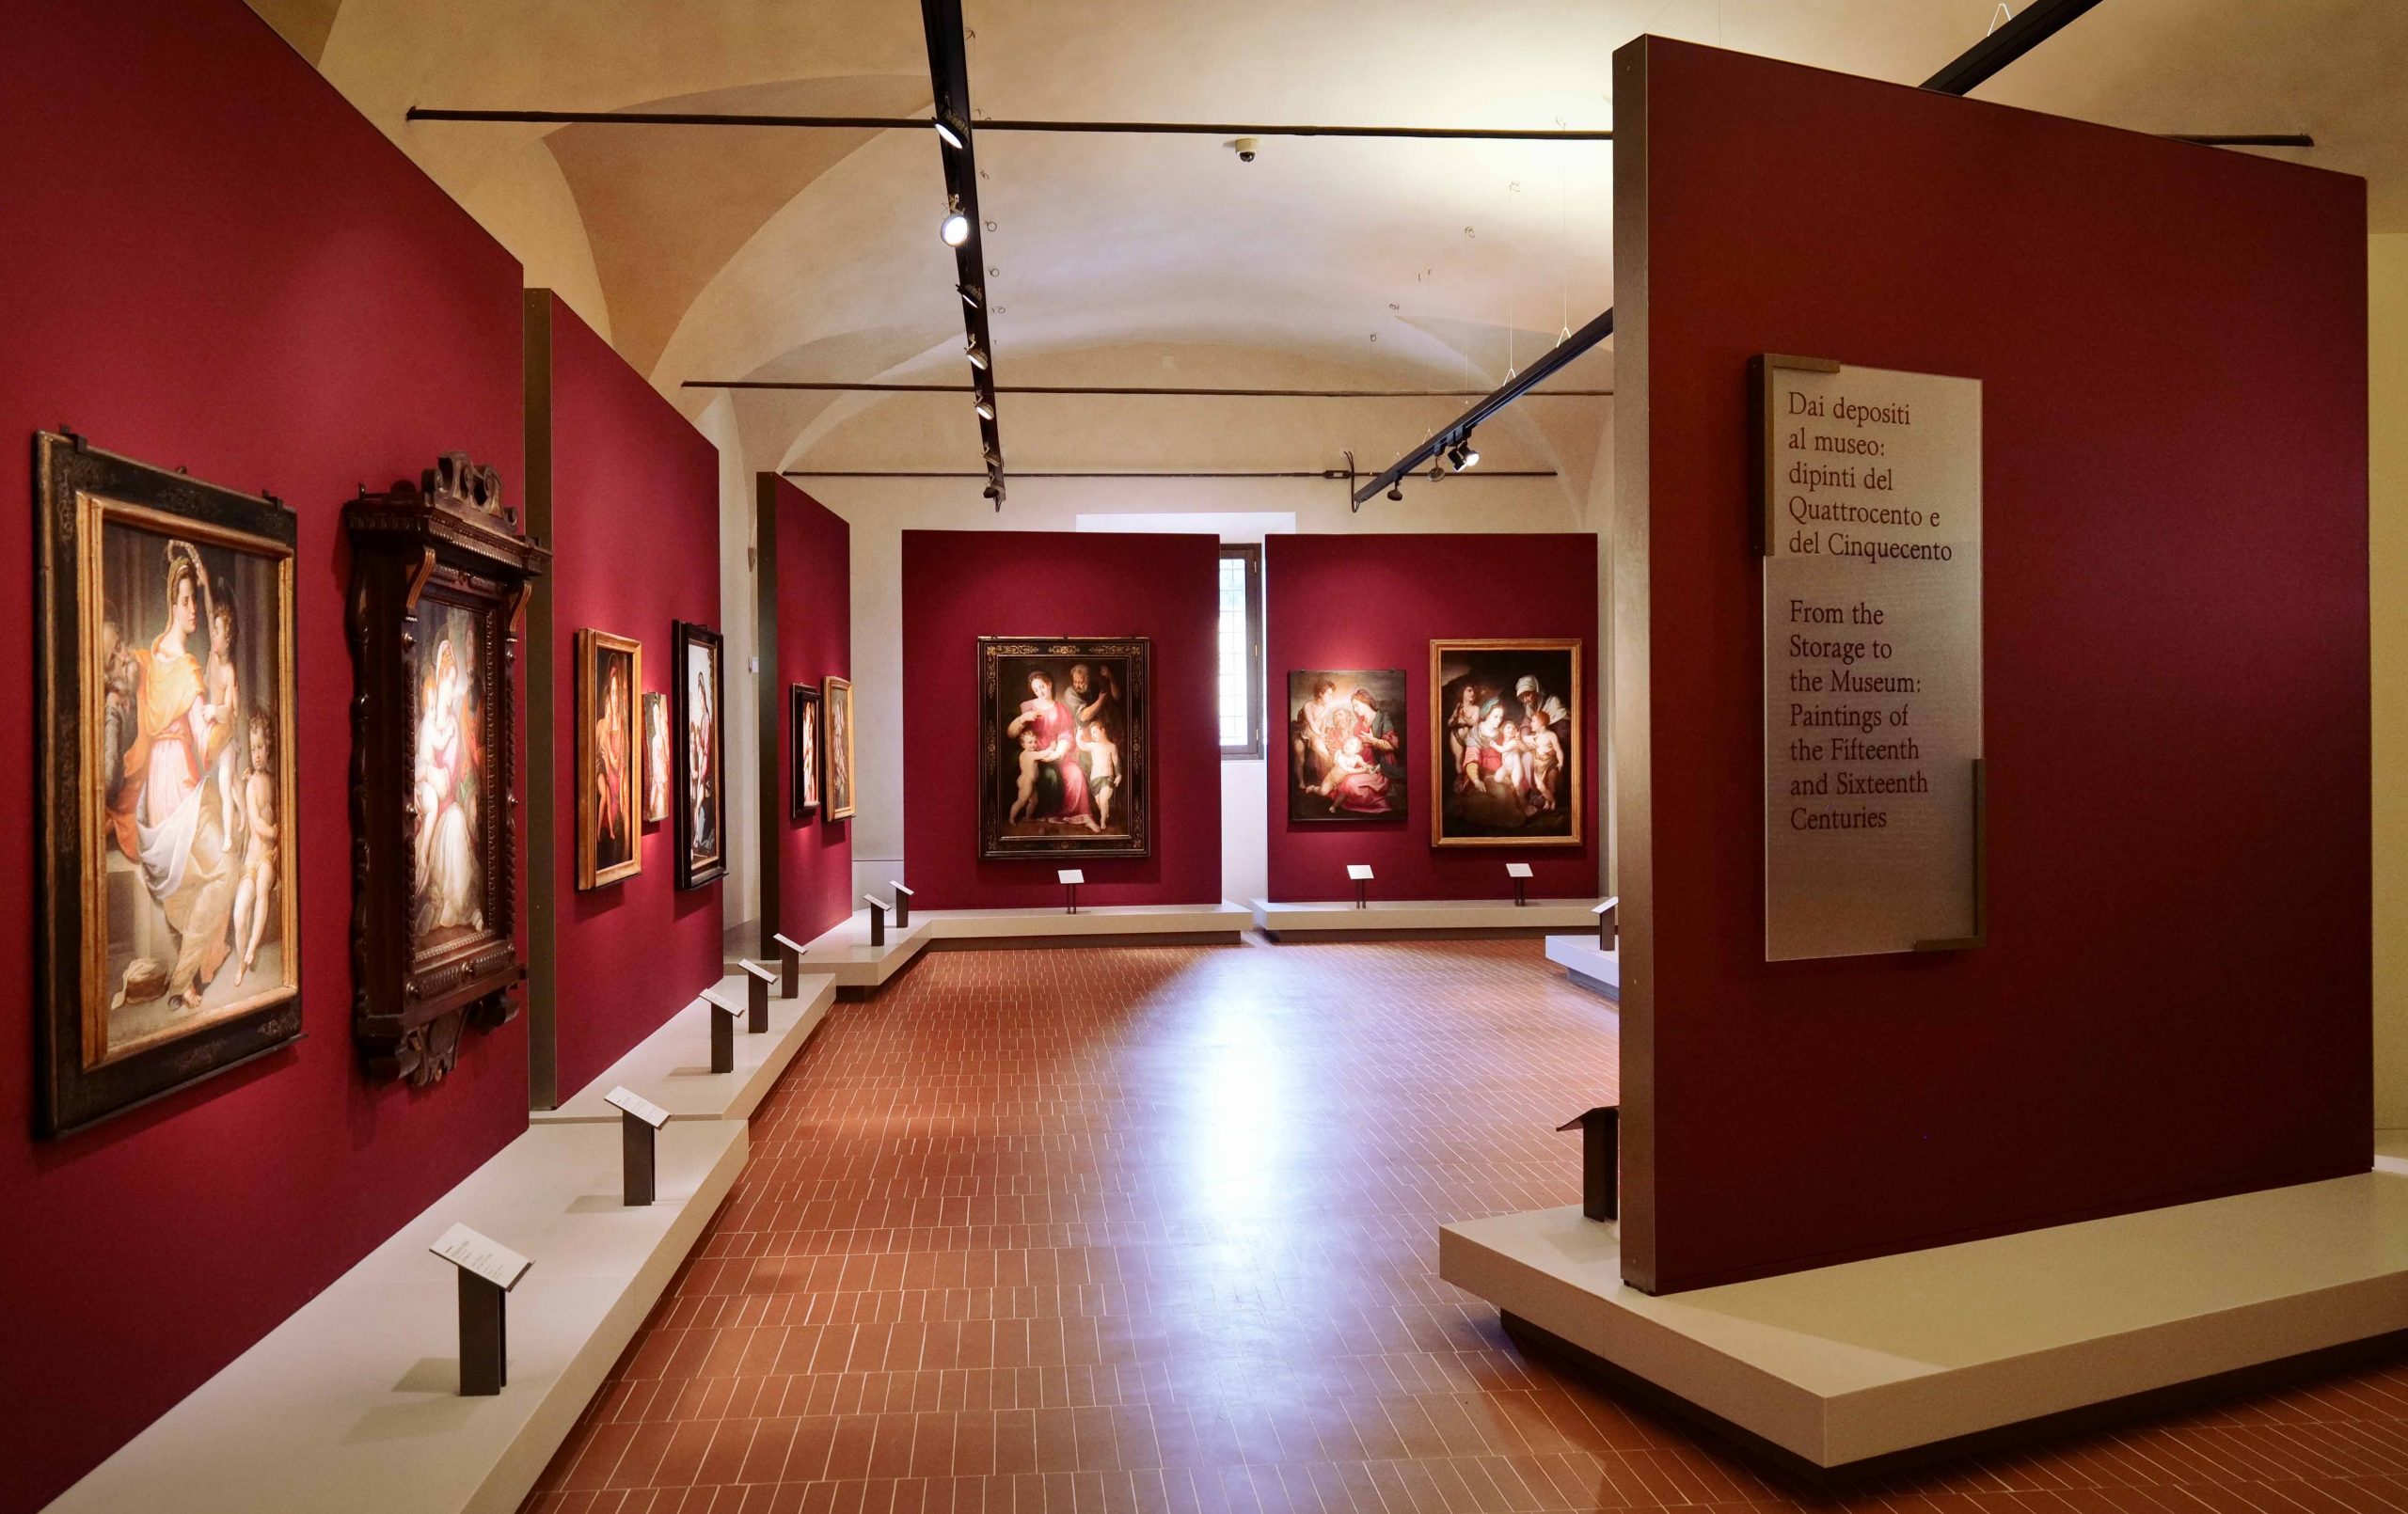 18_Museo-di-Palazzo-Pretorio-Po_Dai-depositi-al-museo-scaled.jpg